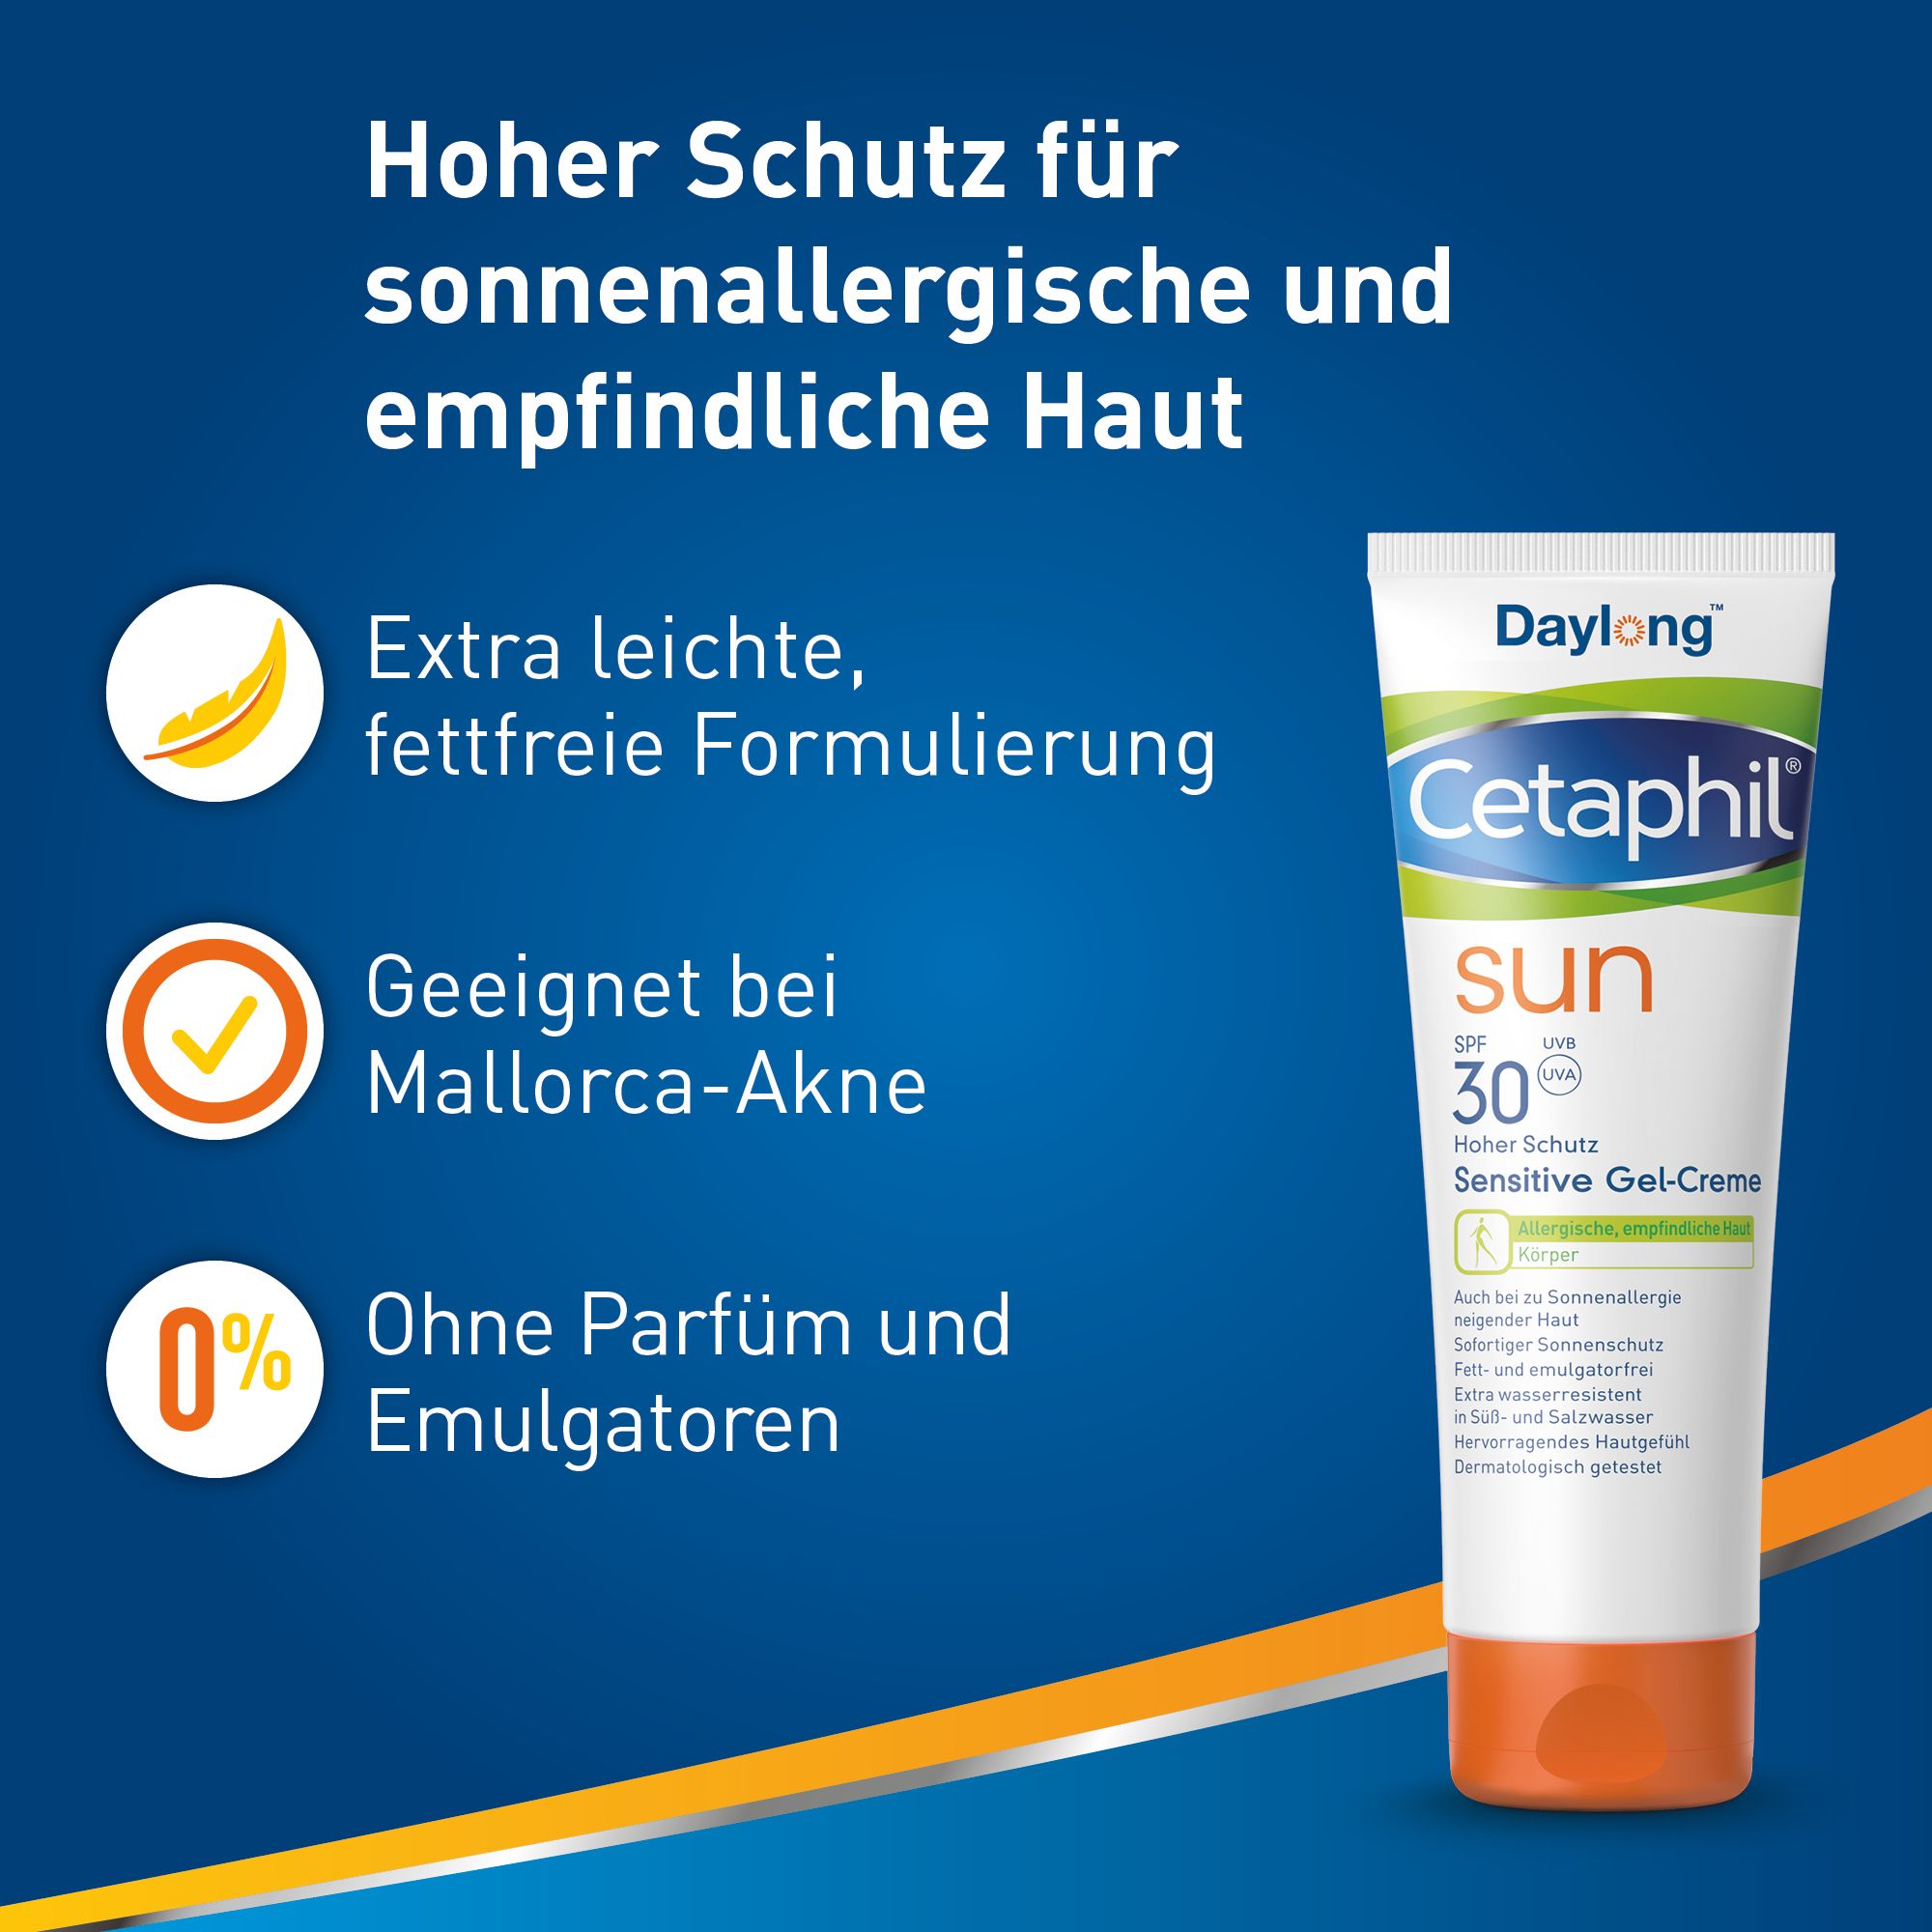 CETAPHIL SUN Sensitive Gel-Creme SPF 30 Extra-leichter, fettfreier Sonnenschutz